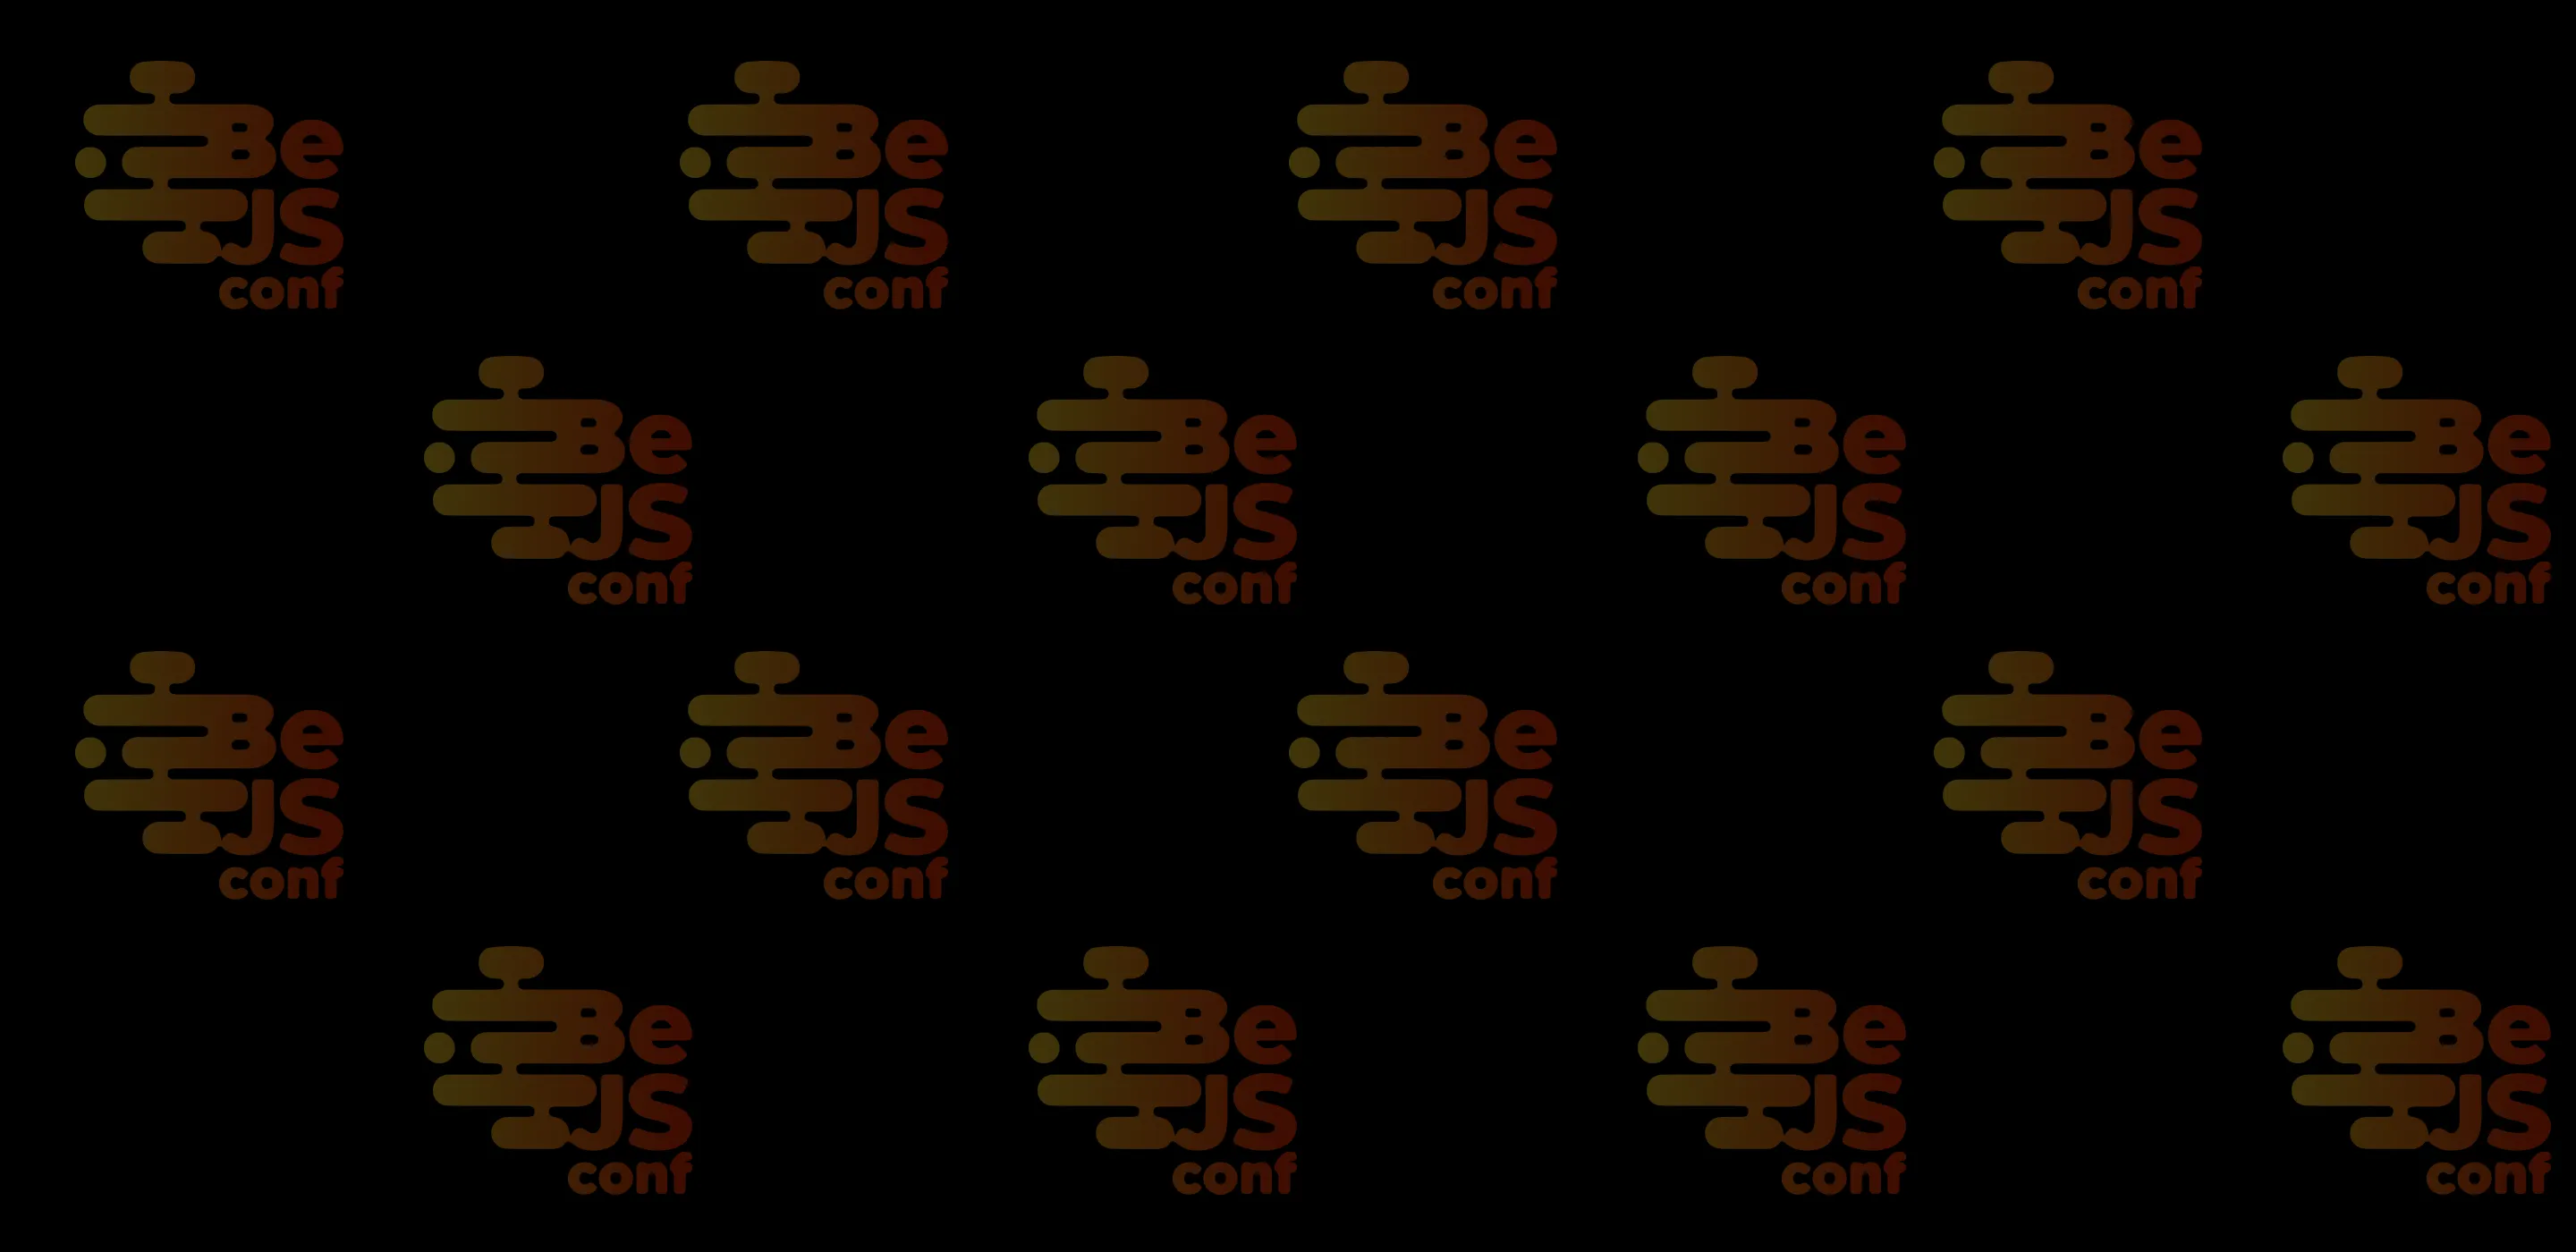 BeJS conf banner